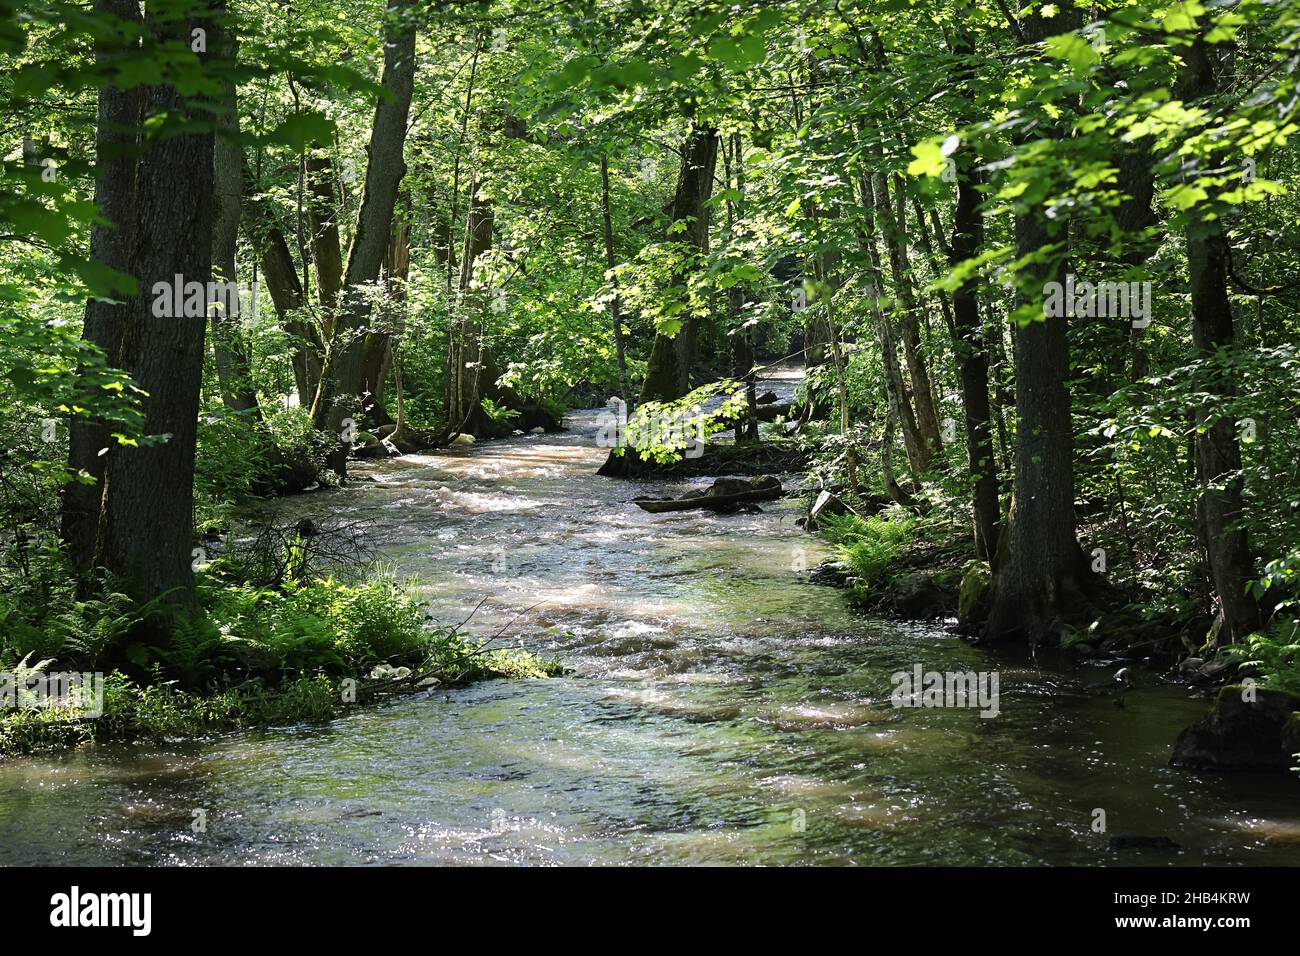 Ruisseau de la forêt, l'eau qui coule sur les rochers, et le feuillage luxuriant vert Banque D'Images